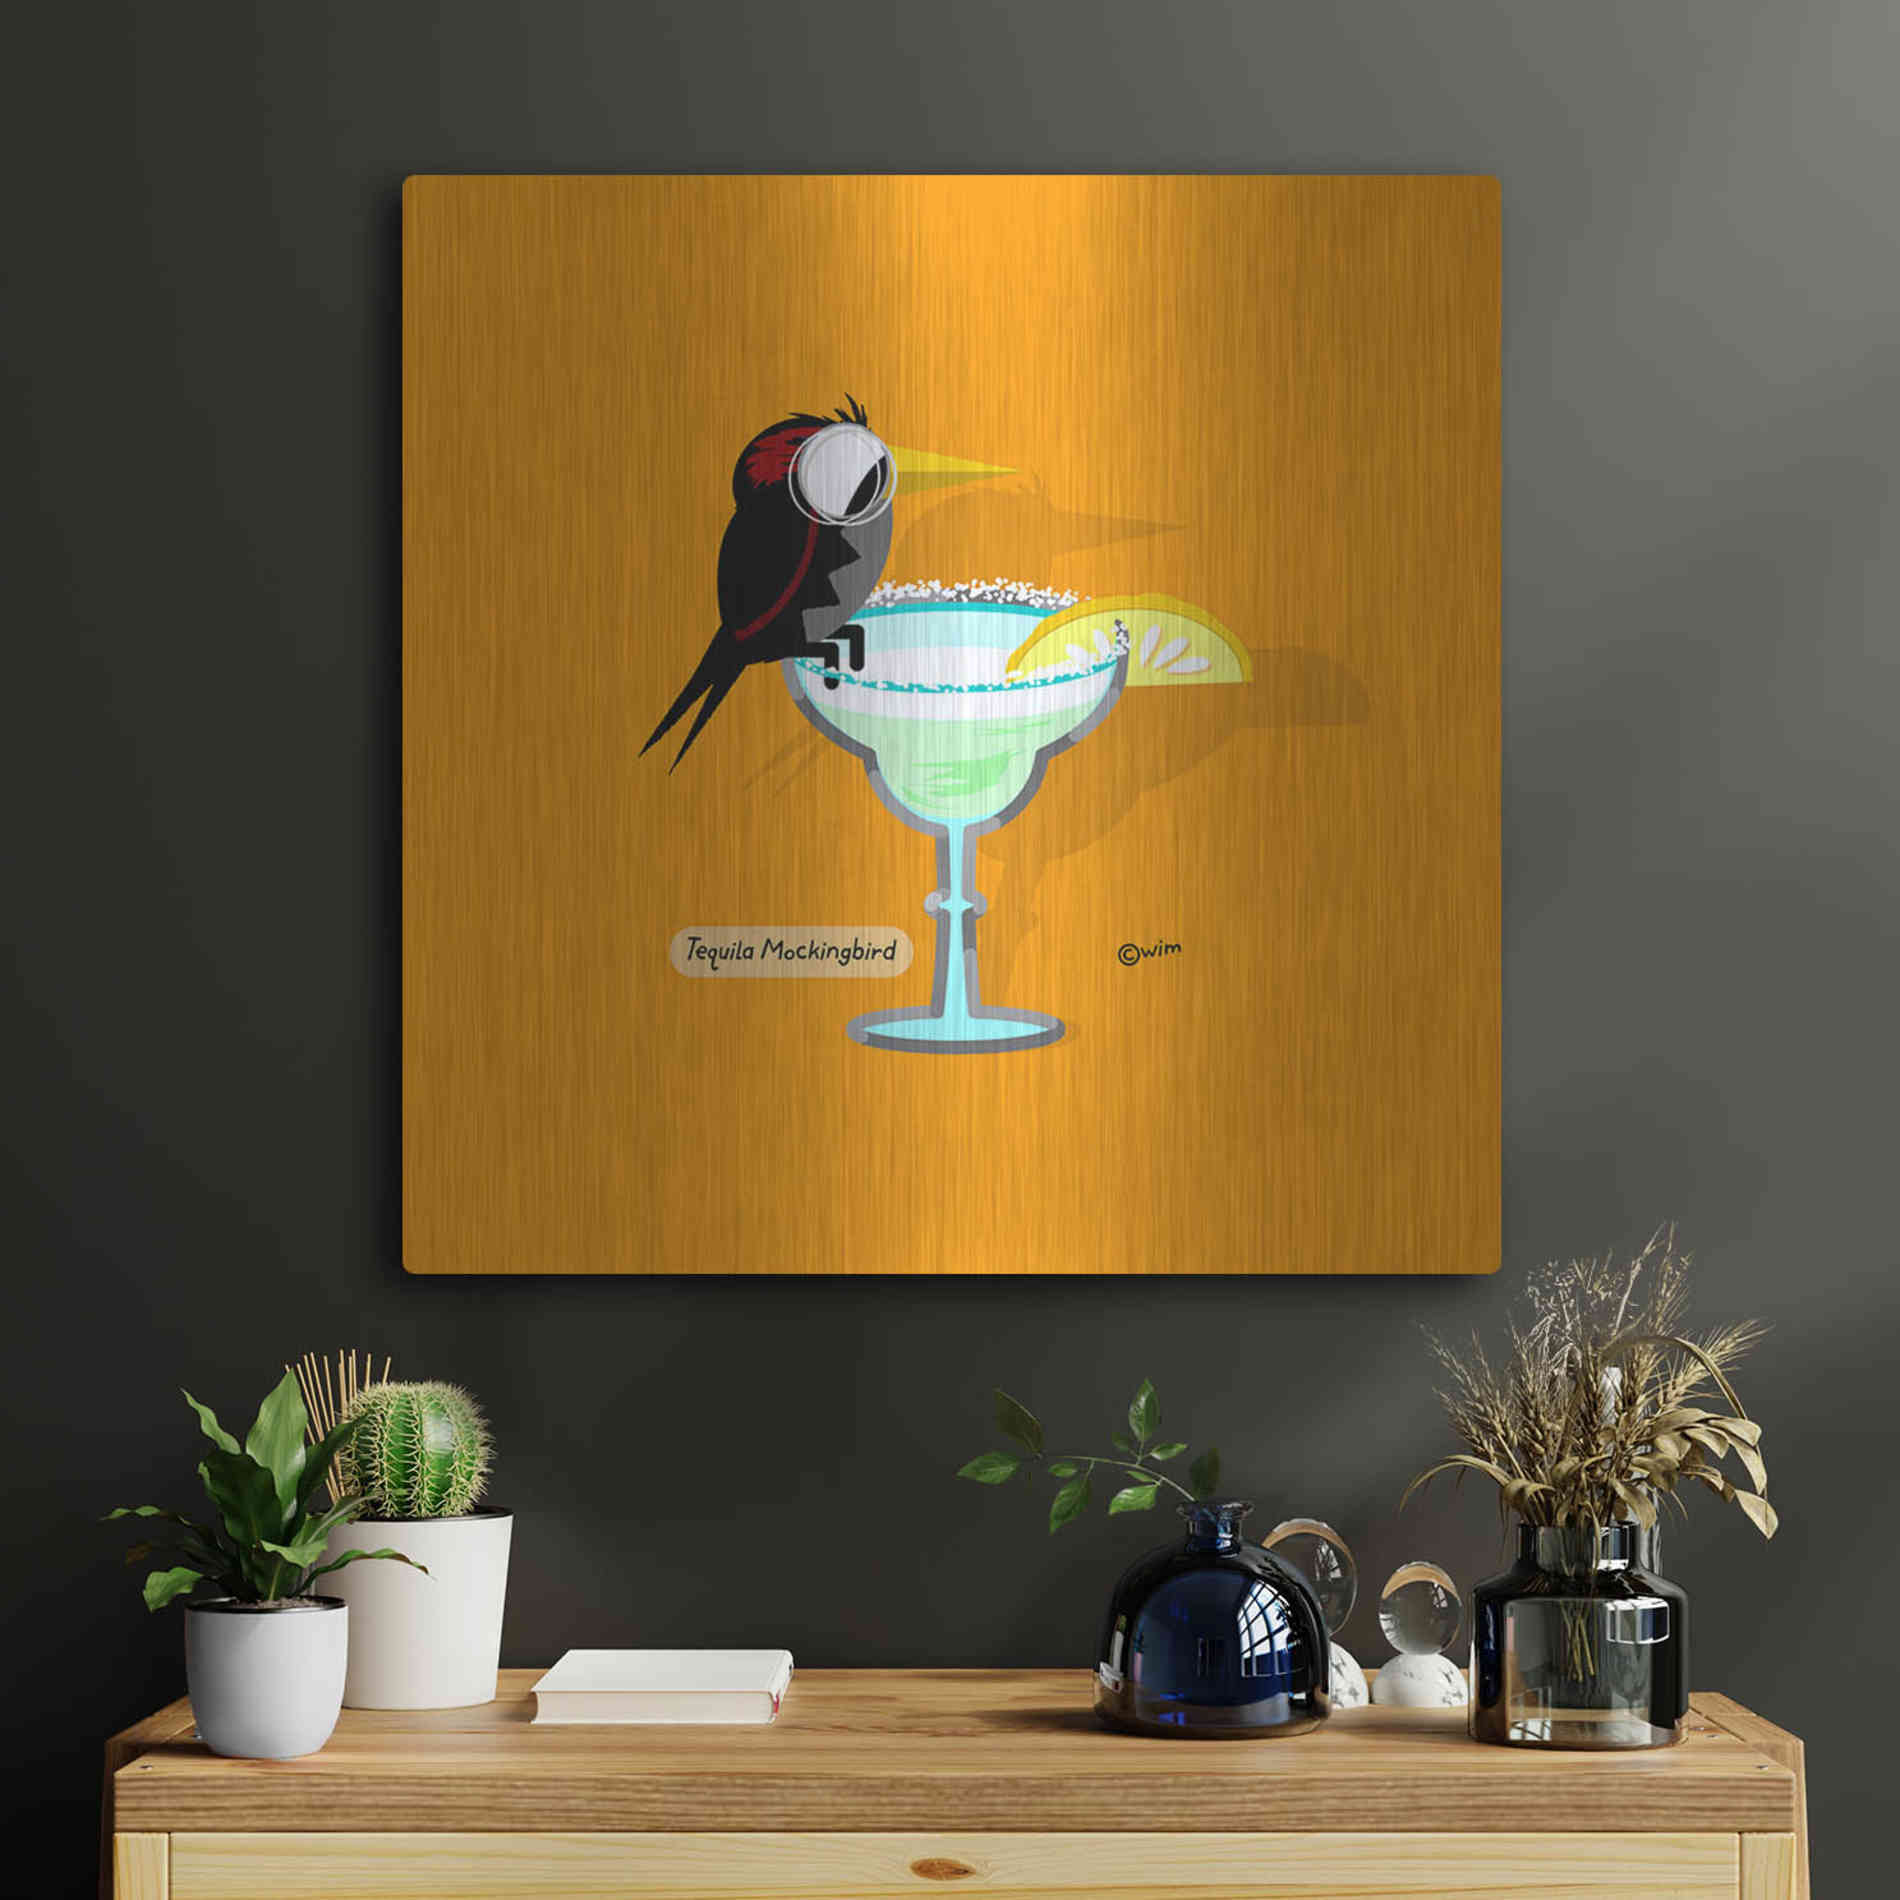 Luxe Metal Art 'Tequila Mockingbird' by Chuck Wimmer, Metal Wall Art,24x24